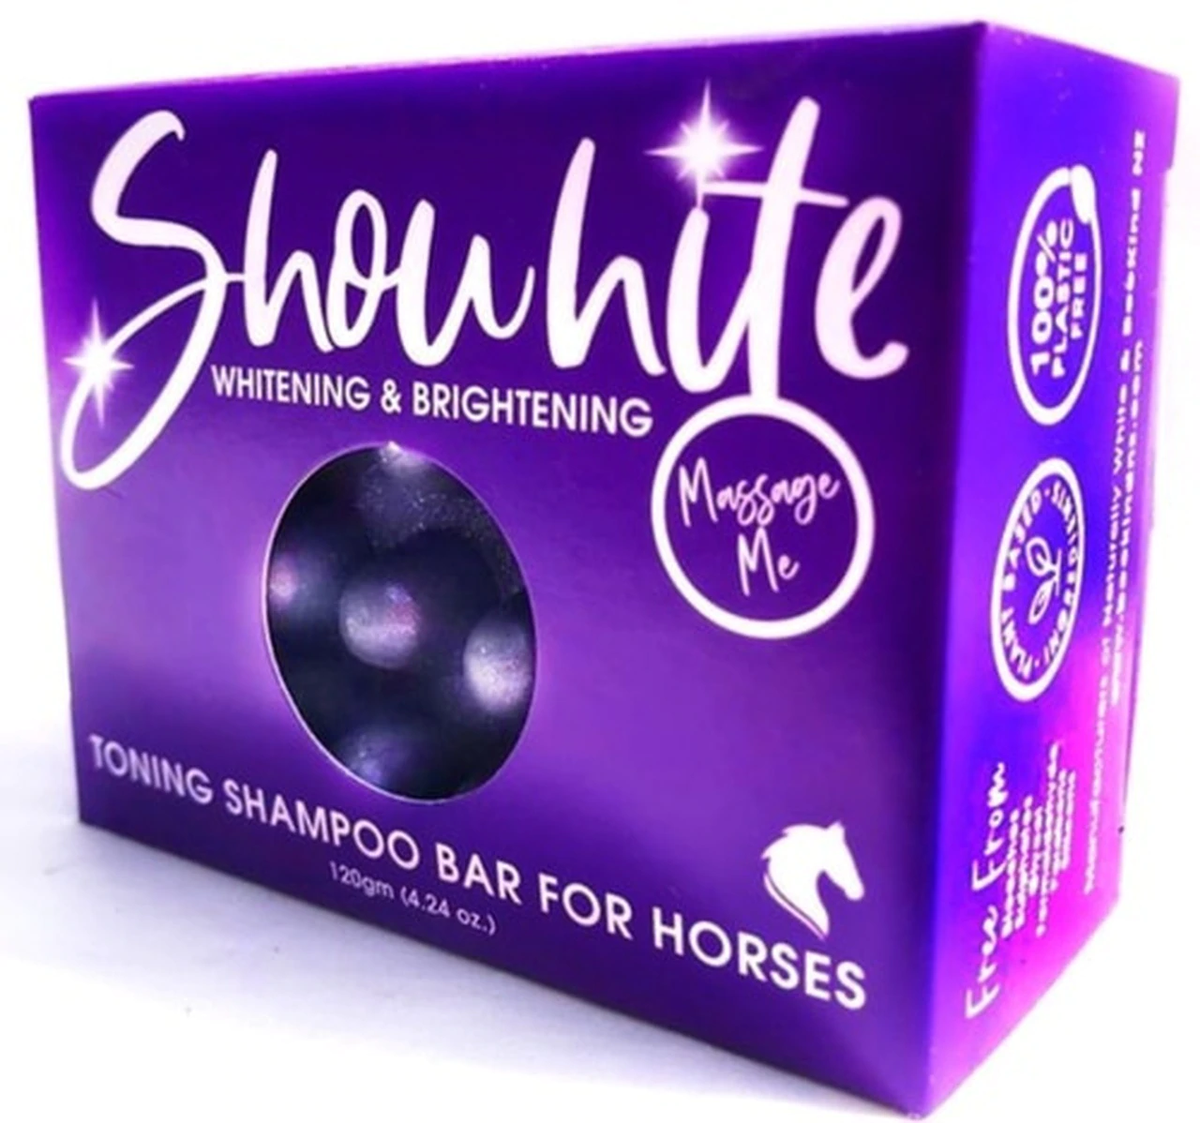 Showhite Toning Shampoo Bar